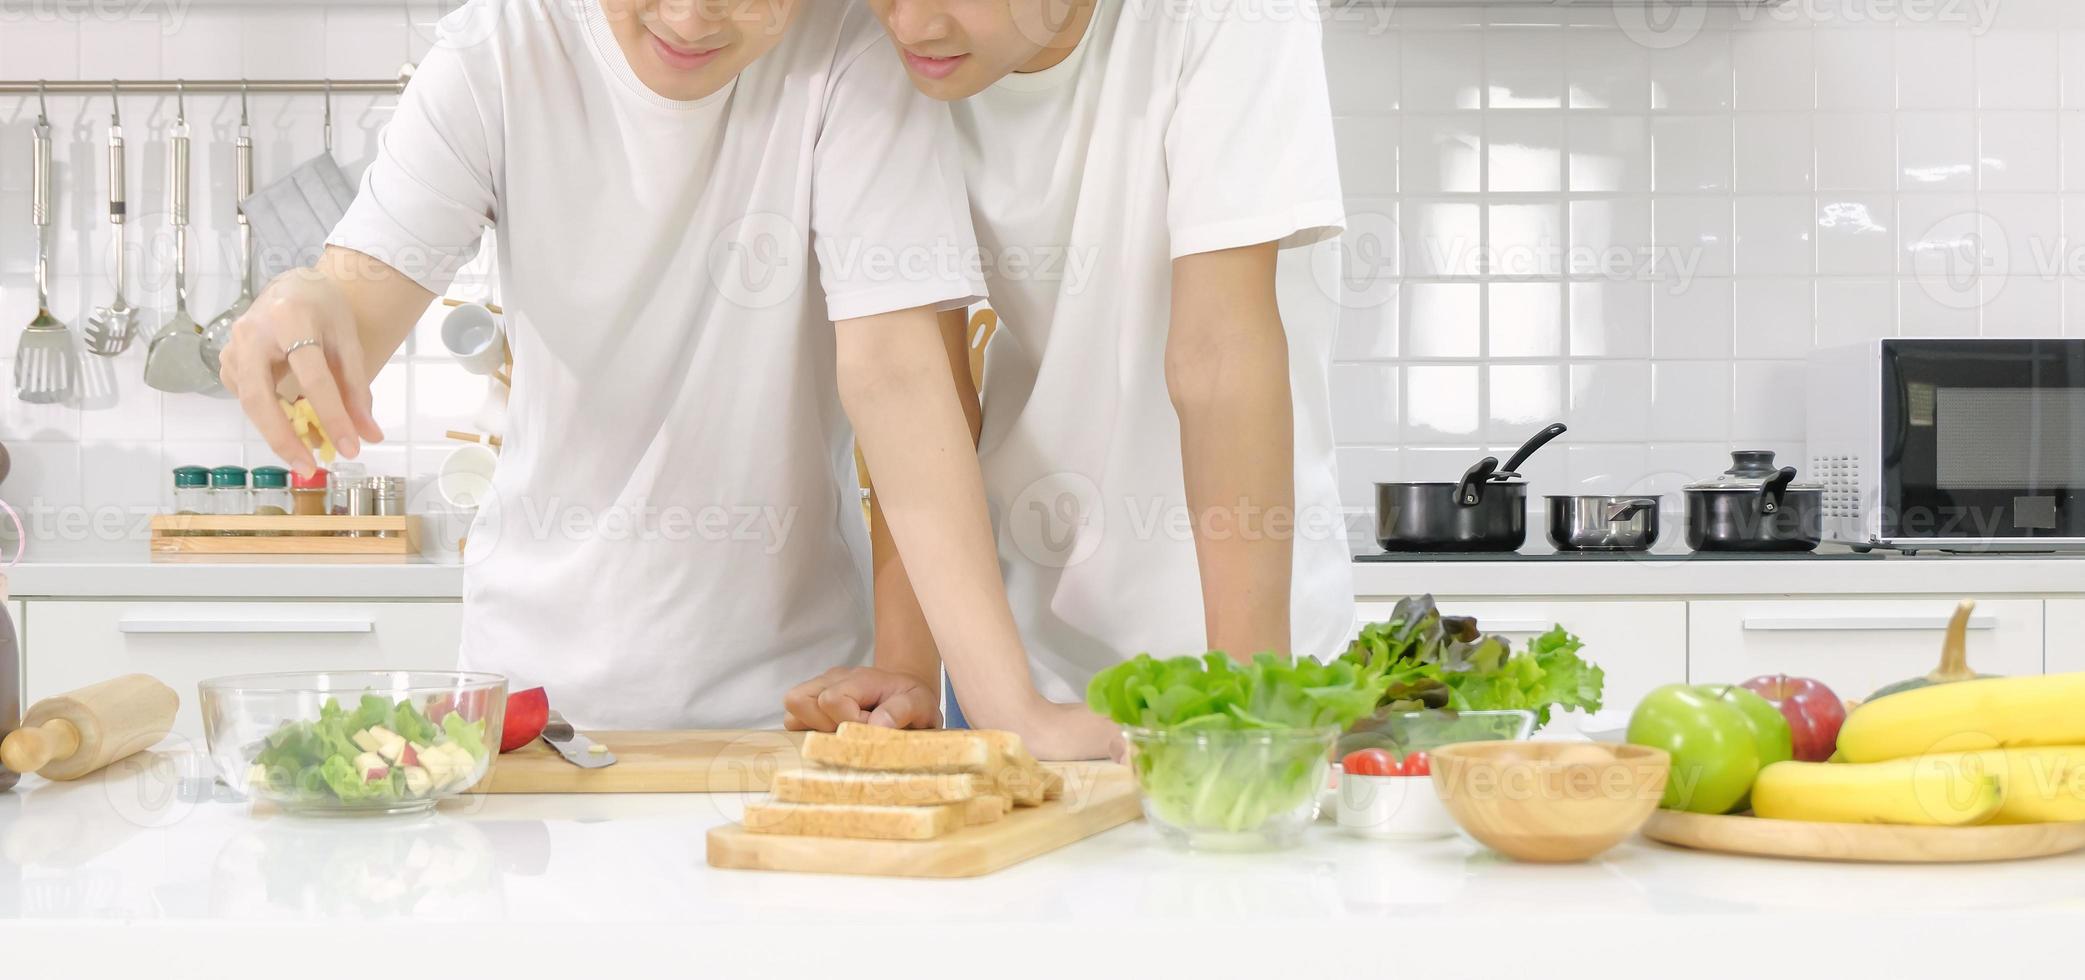 halbporträt asiatisches junges lgbt-männliches paar, das glücklich salat zusammen im weißen küchenhaupthintergrund kocht. Konzept des häuslichen Lebens. selektiver Fokus. foto